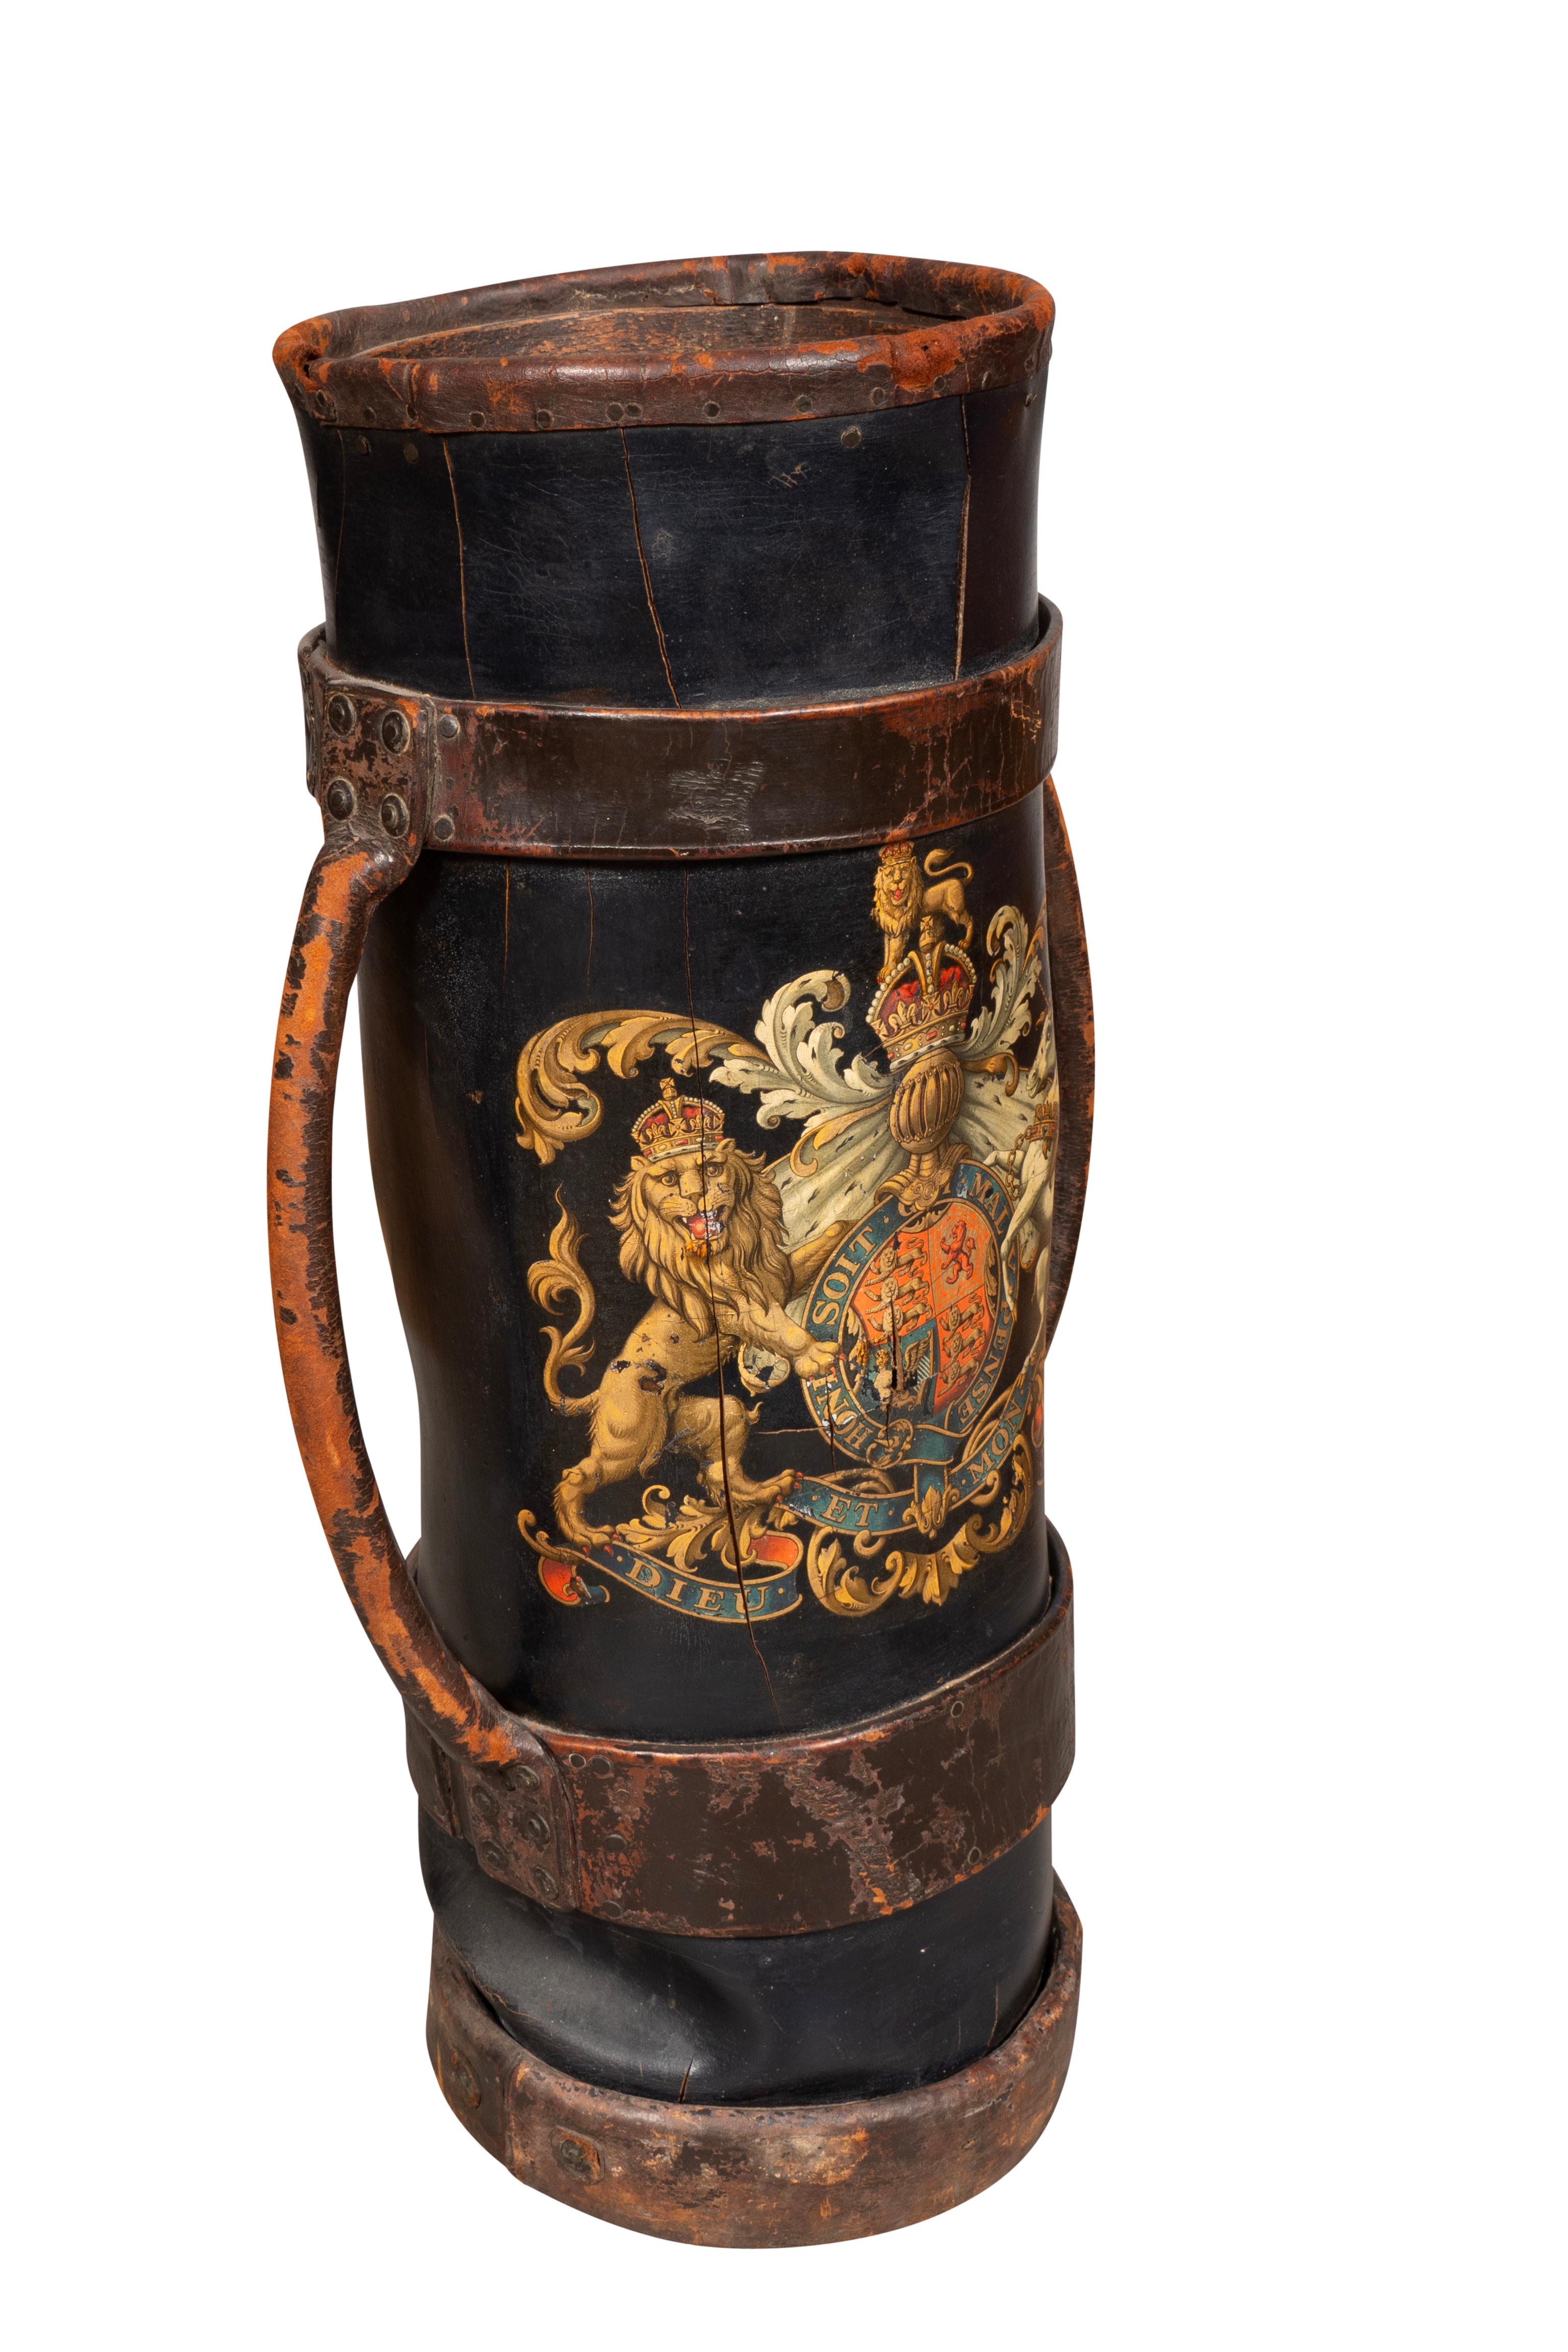 Zylindrisch mit zwei Griffen und einem gemalten Wappen.